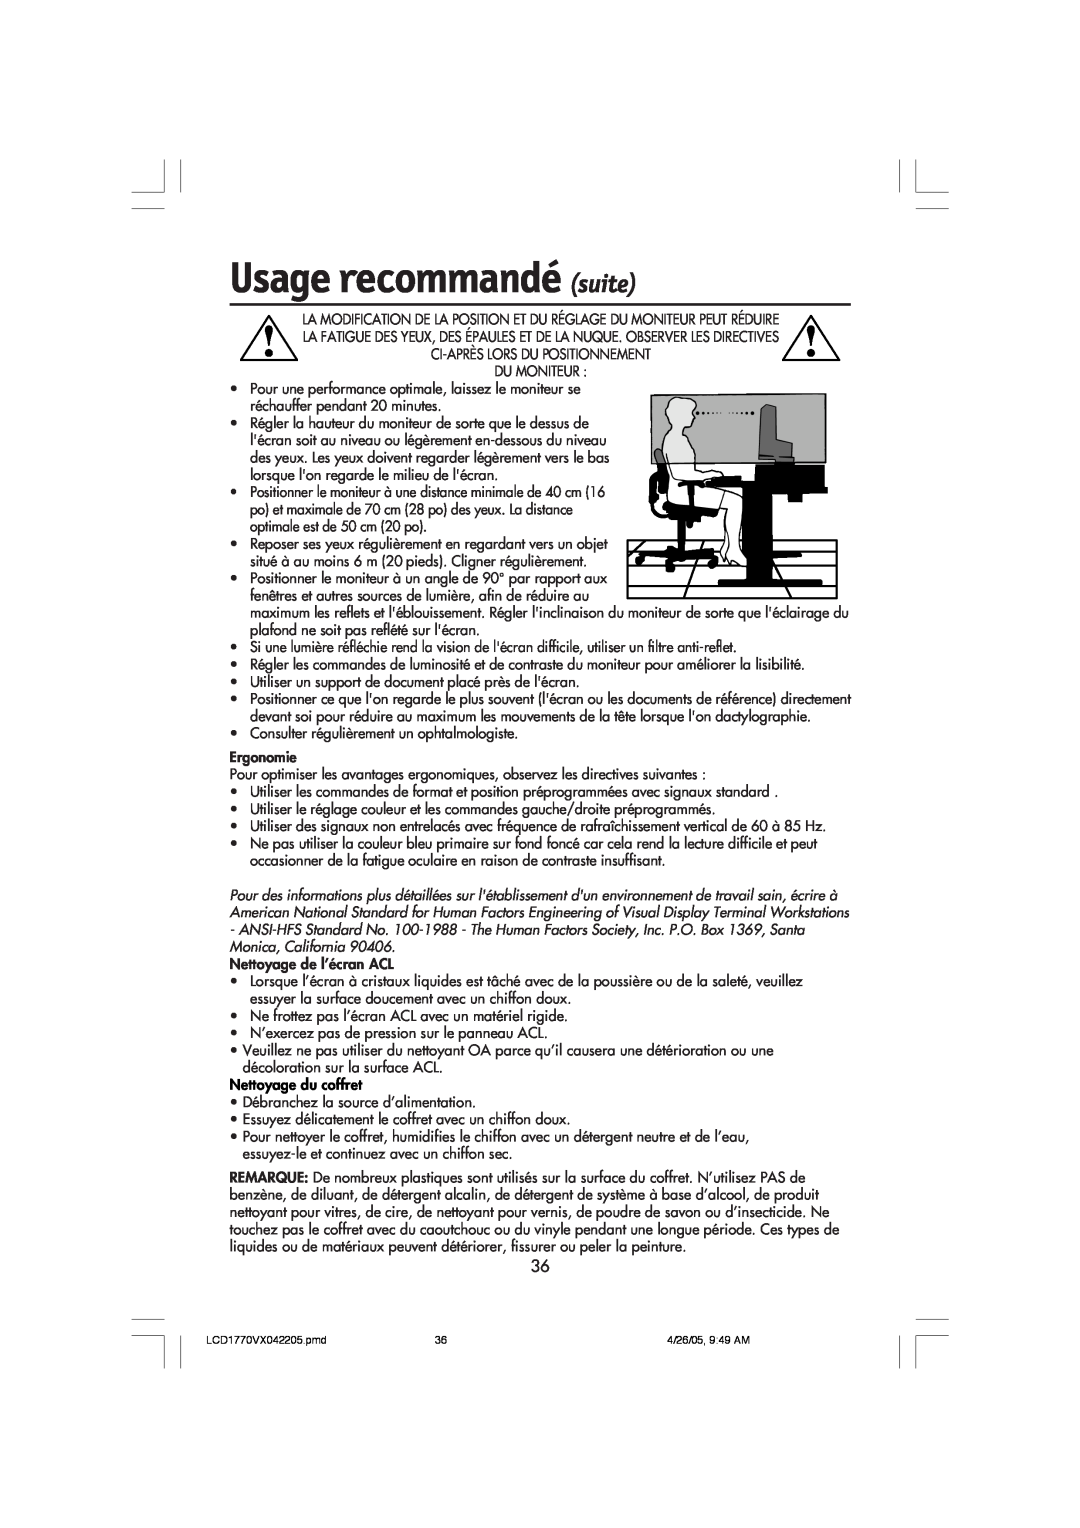 NEC LCD1770VX user manual Usage recommandé suite 